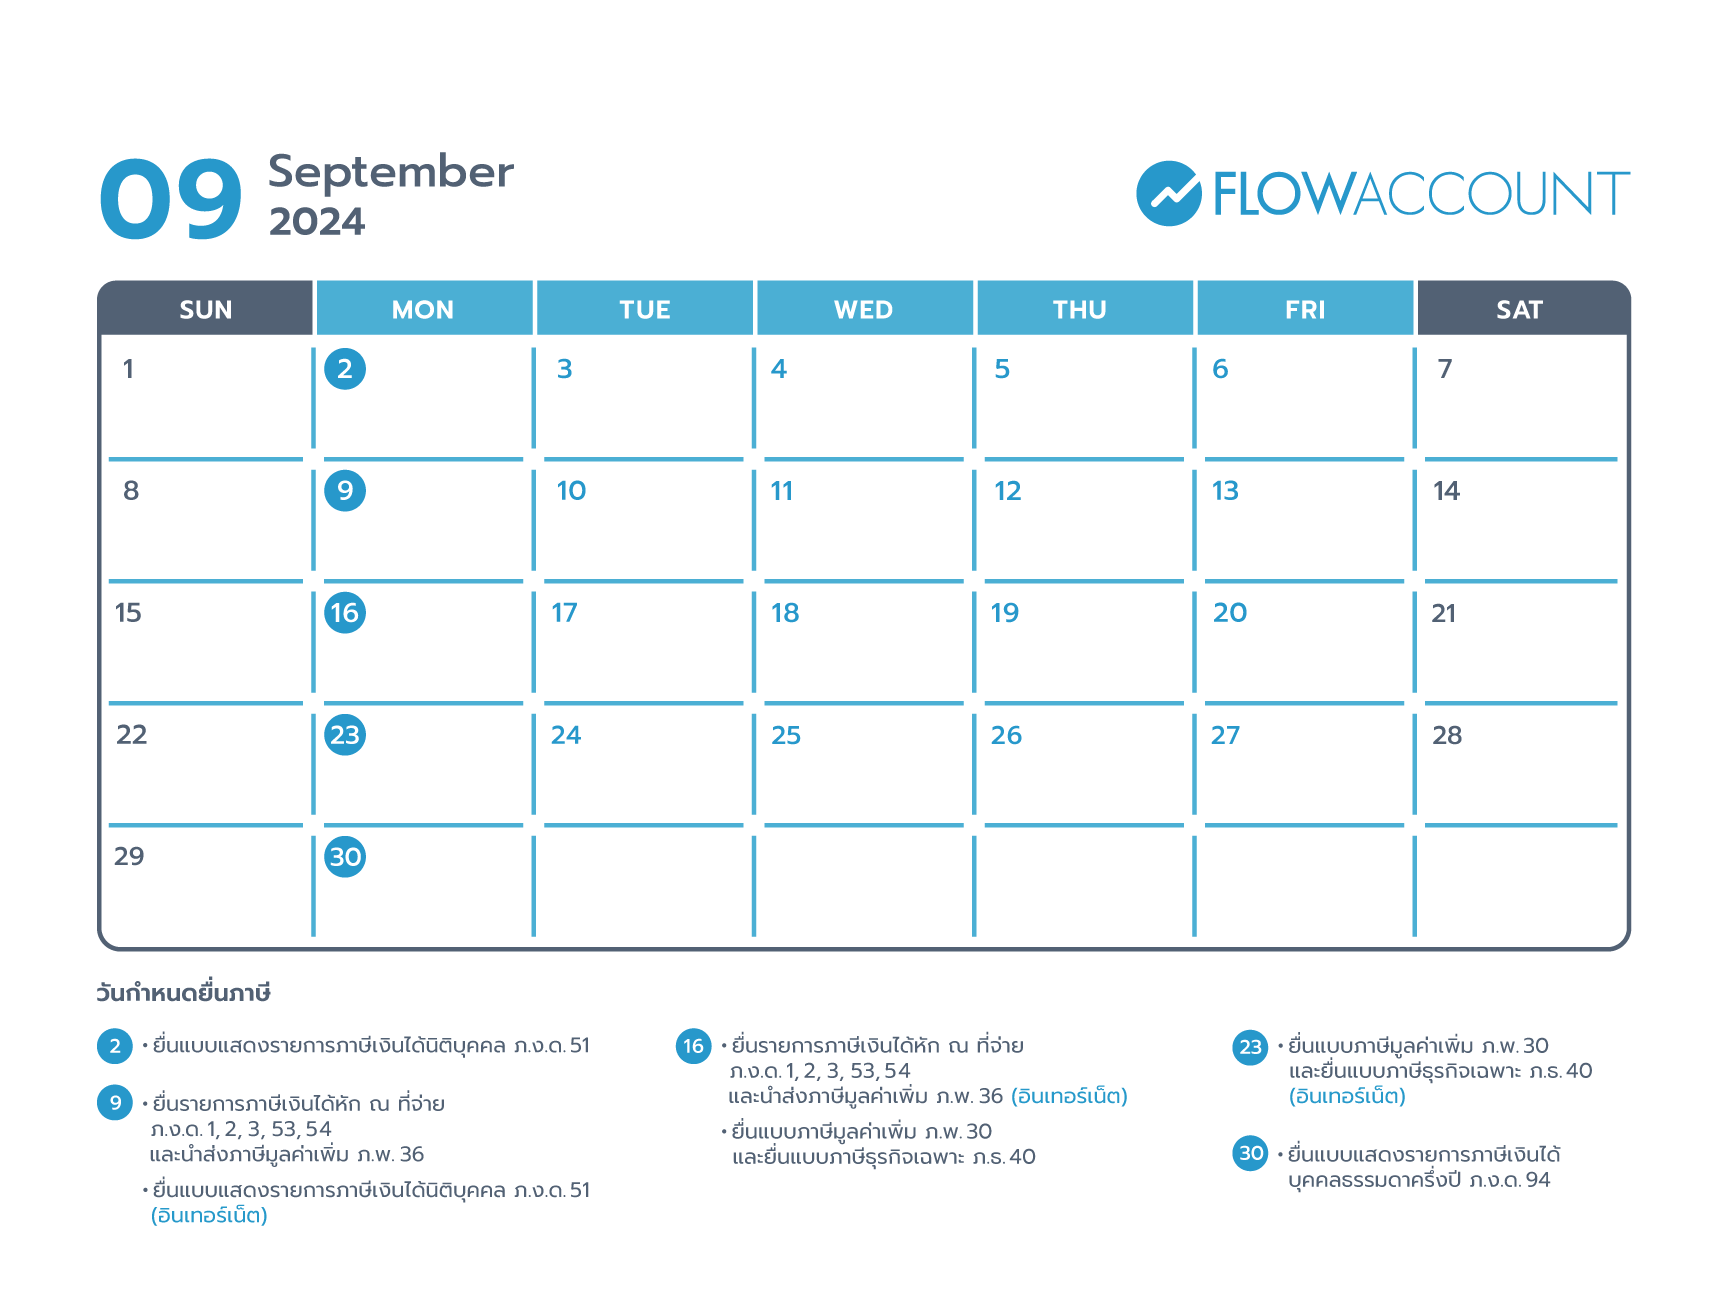 Tax calendar on September 2024